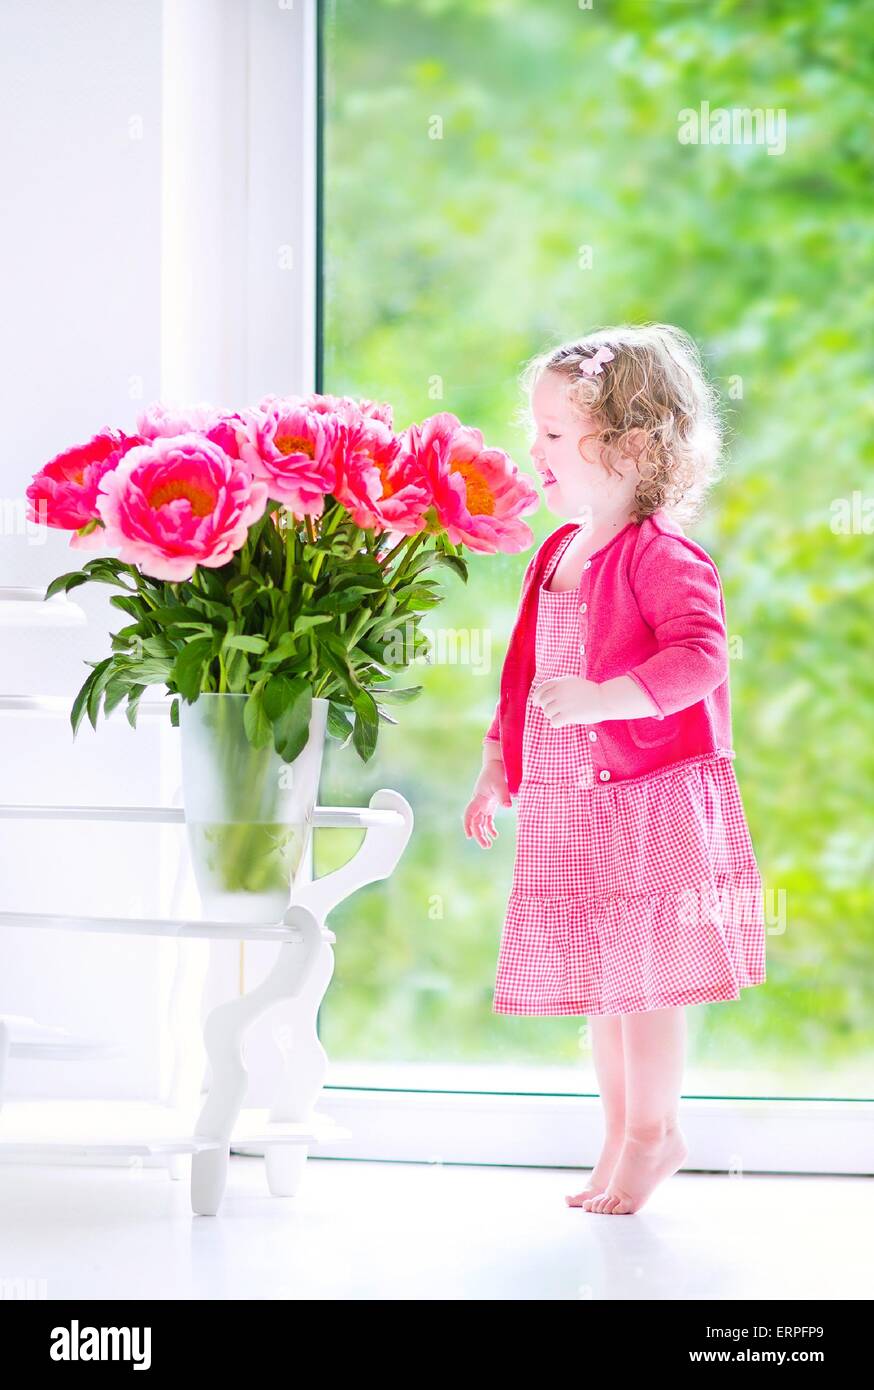 Niedliche glücklich Kleinkind Mädchen mit dem lockigen Haar trägt ein rosa  Kleid Spiel mit ein paar schöne große Pfingstrose Blumen in einer vase  Stockfotografie - Alamy